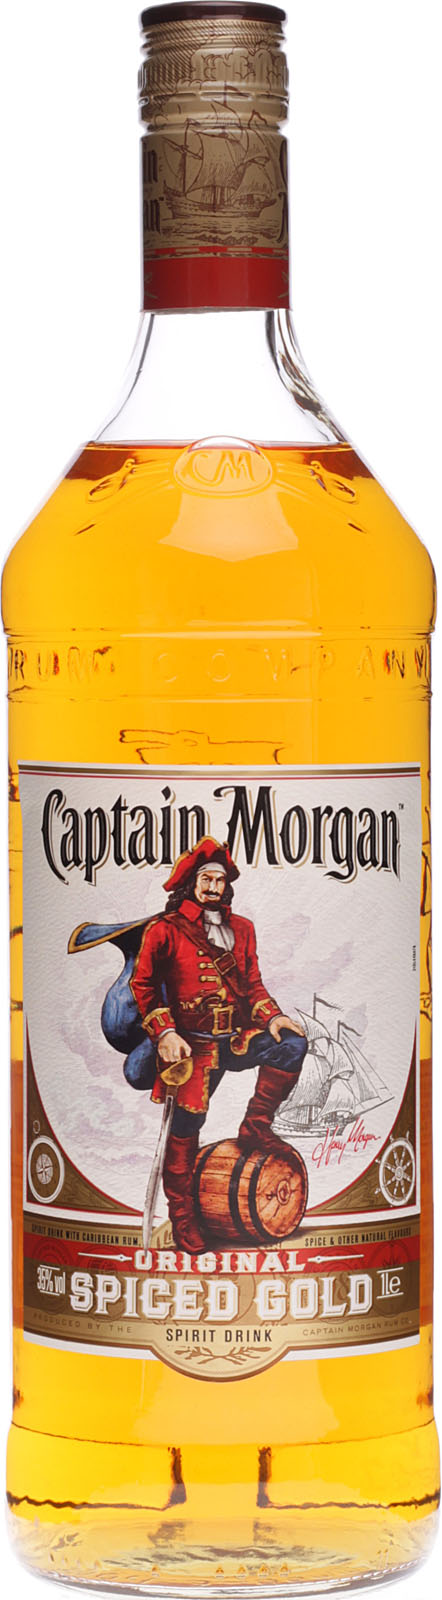 Captain Morgan bei Gold kaufen barfish.de Spiced